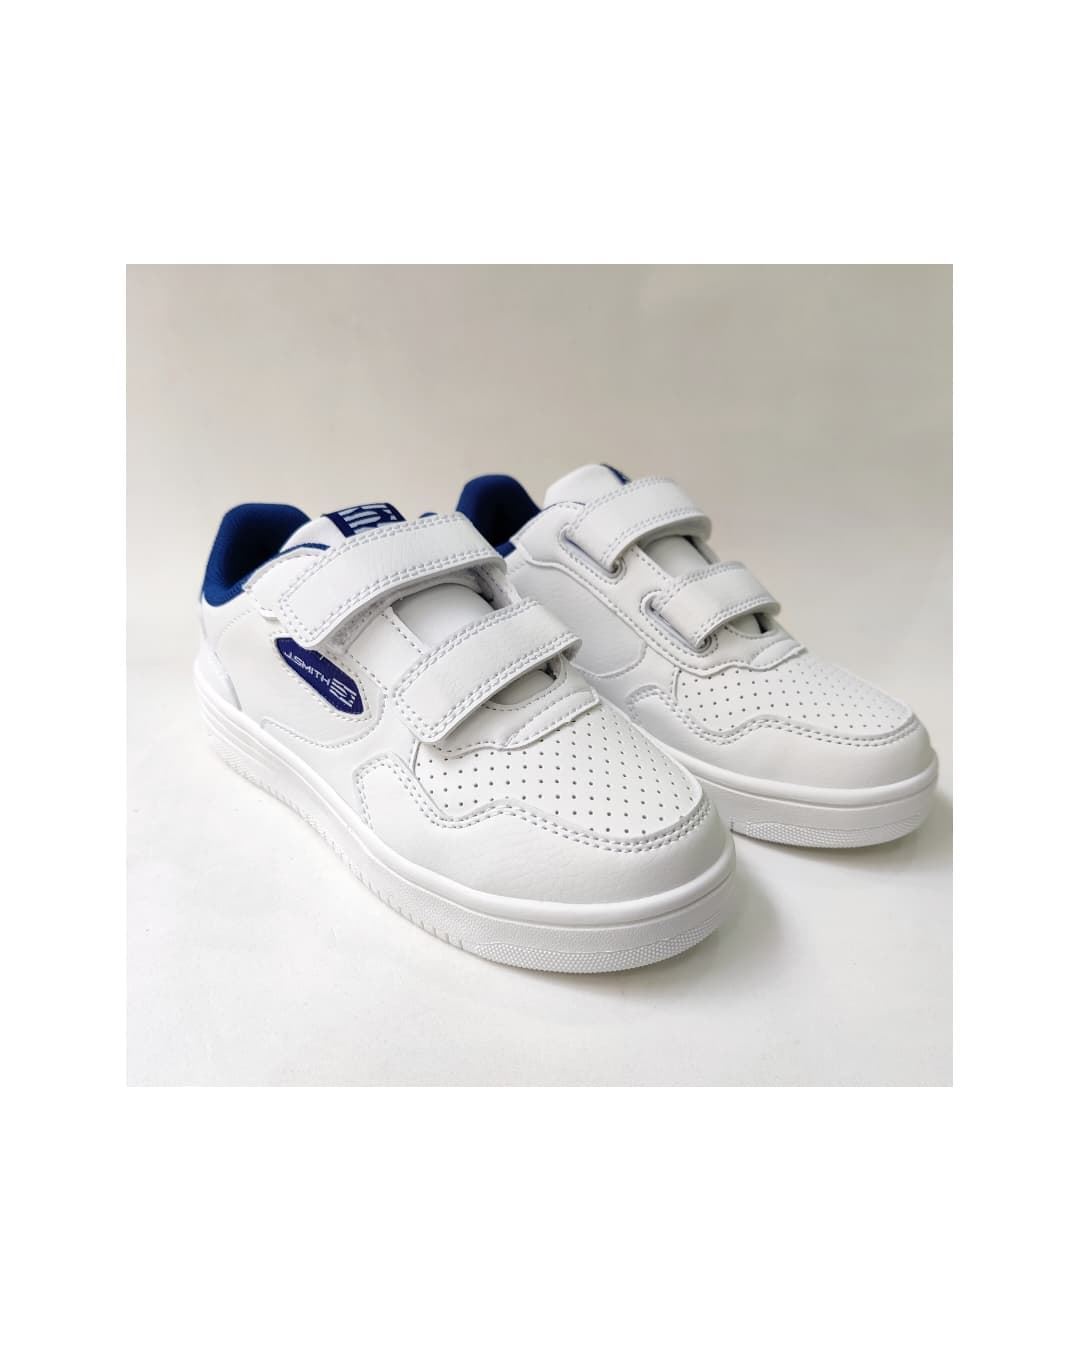 John Smith Vimon Jr 24V White Sneakers for Kids - Image 4